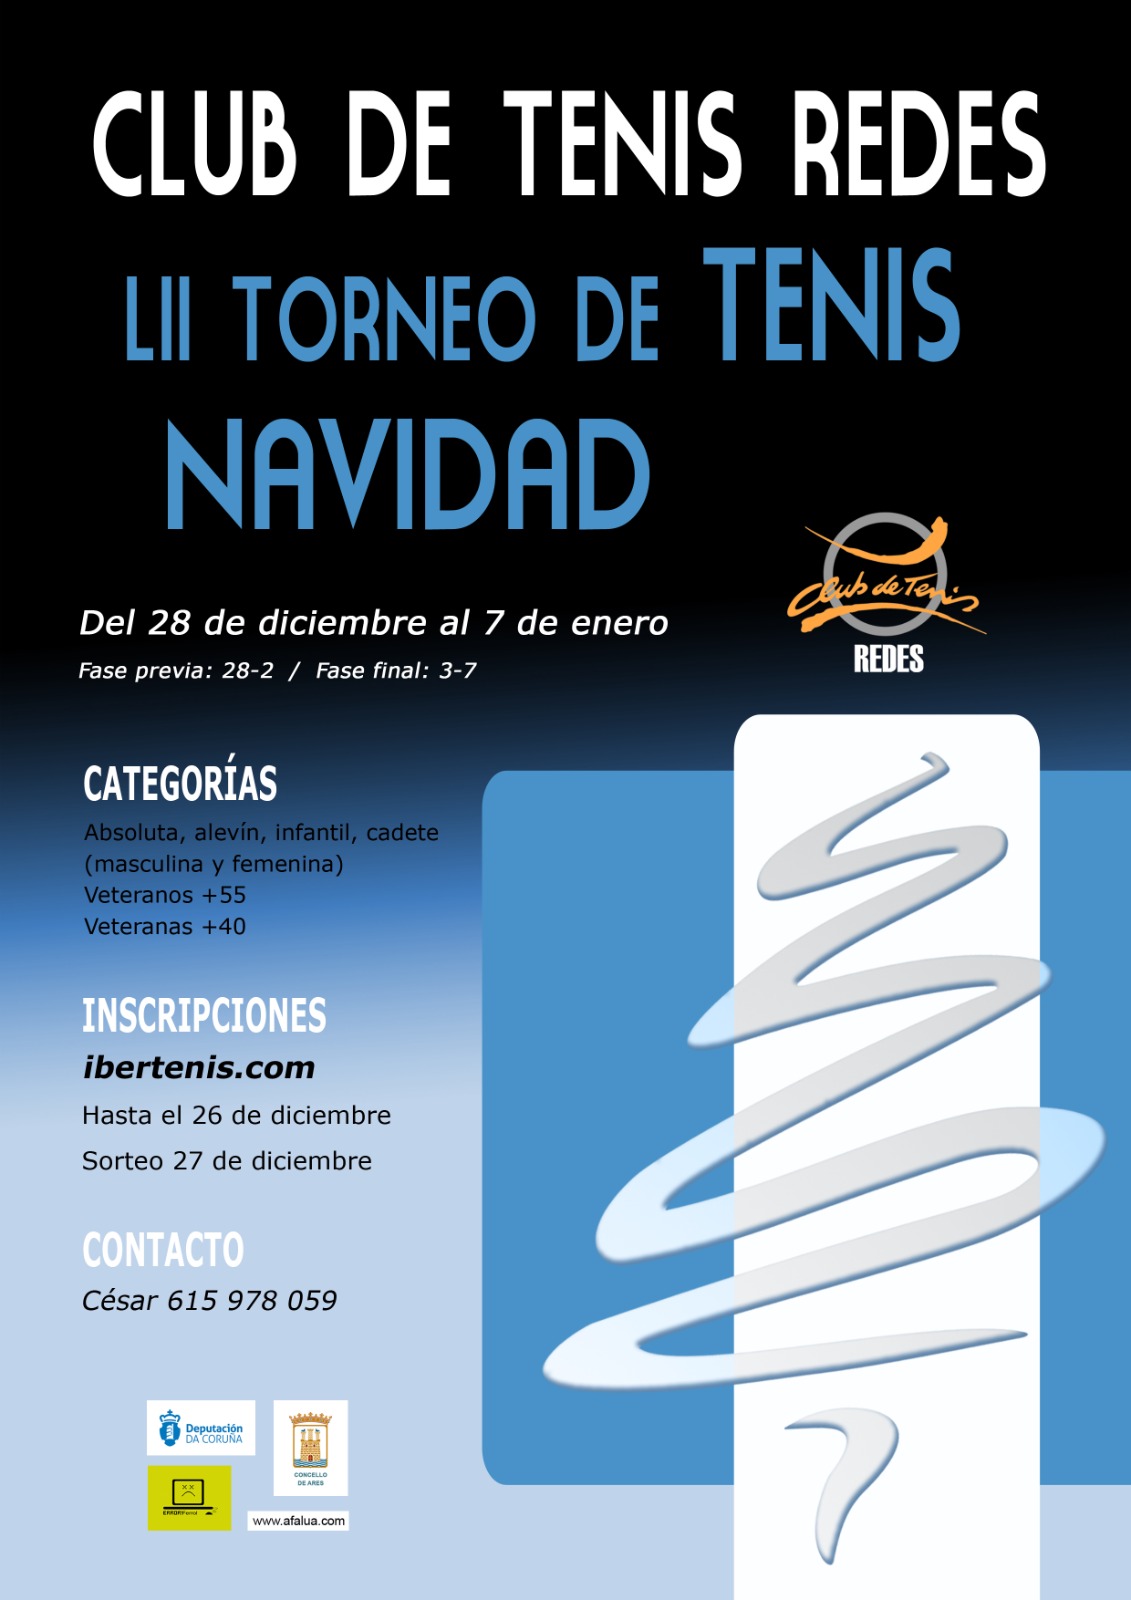 LII TORNEO DE NAVIDAD - CLUB DE TENIS REDES